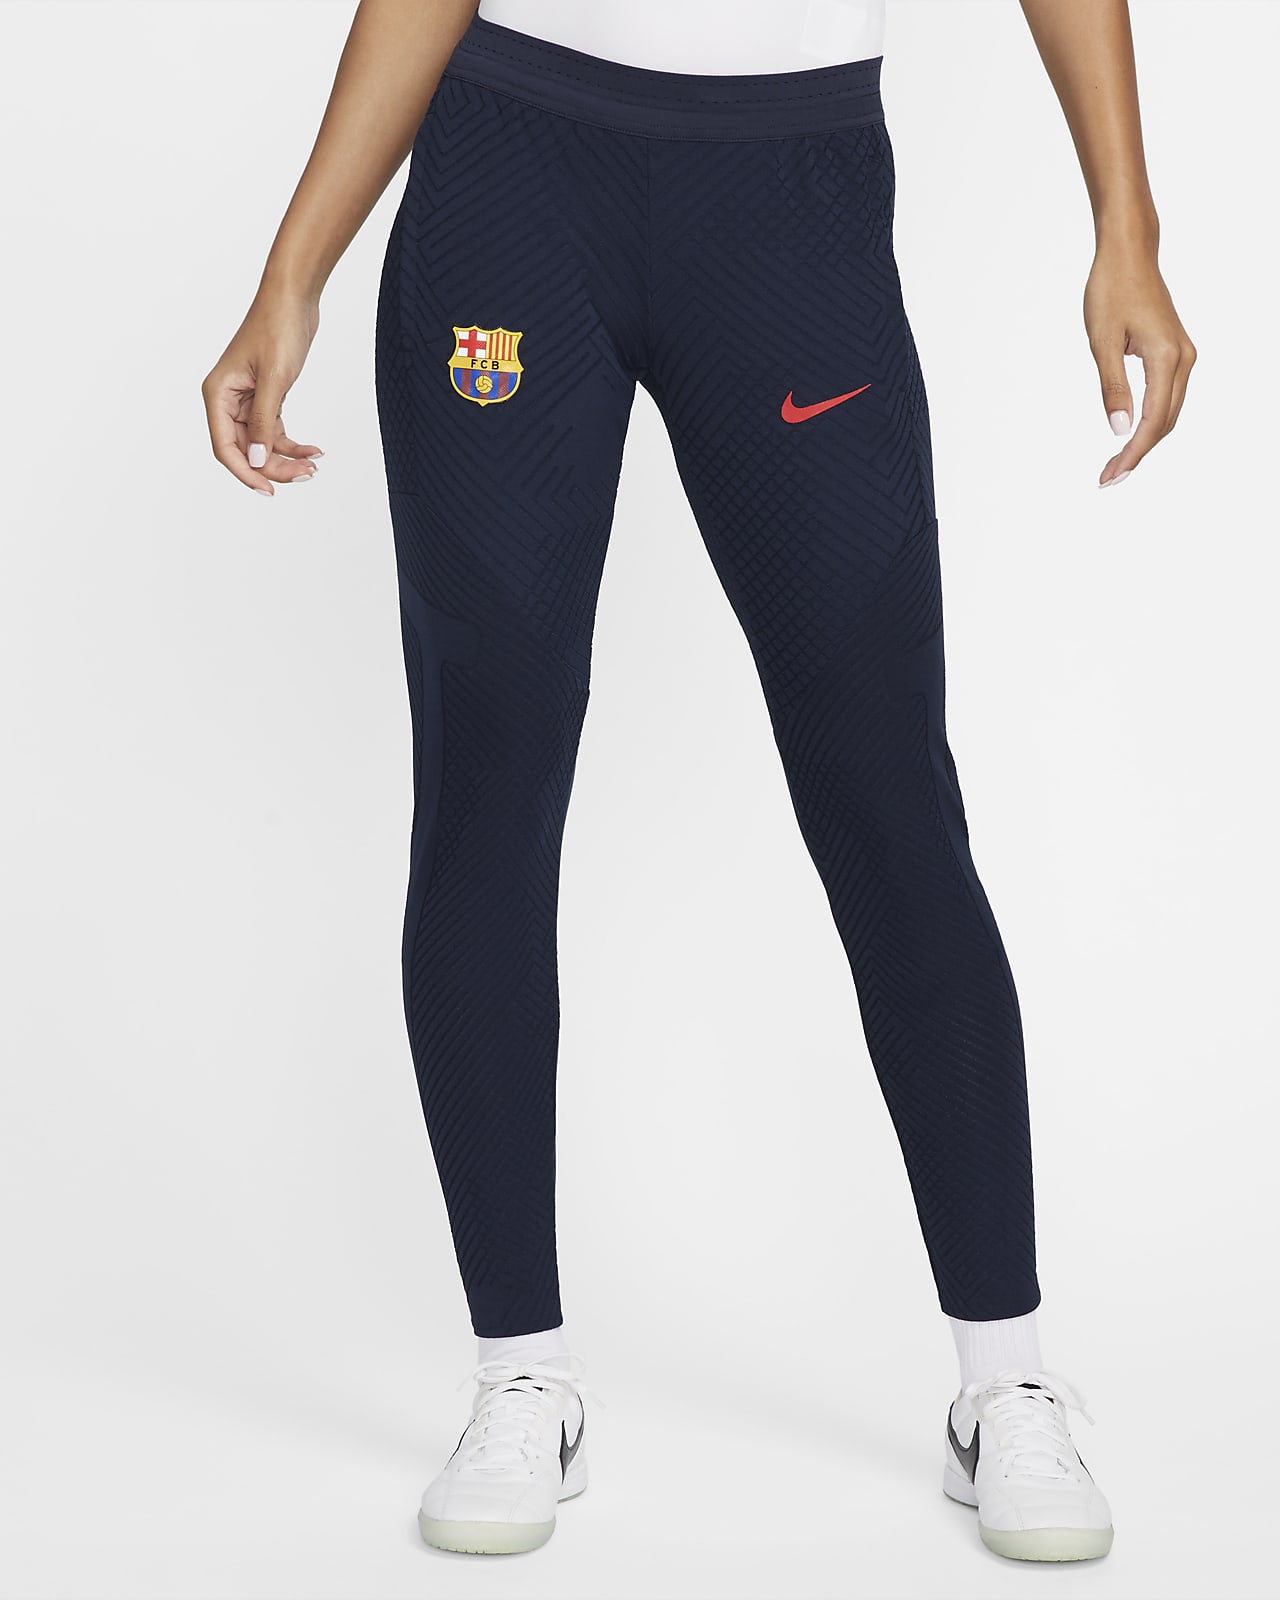 Tech Barça Nike Pants - Women